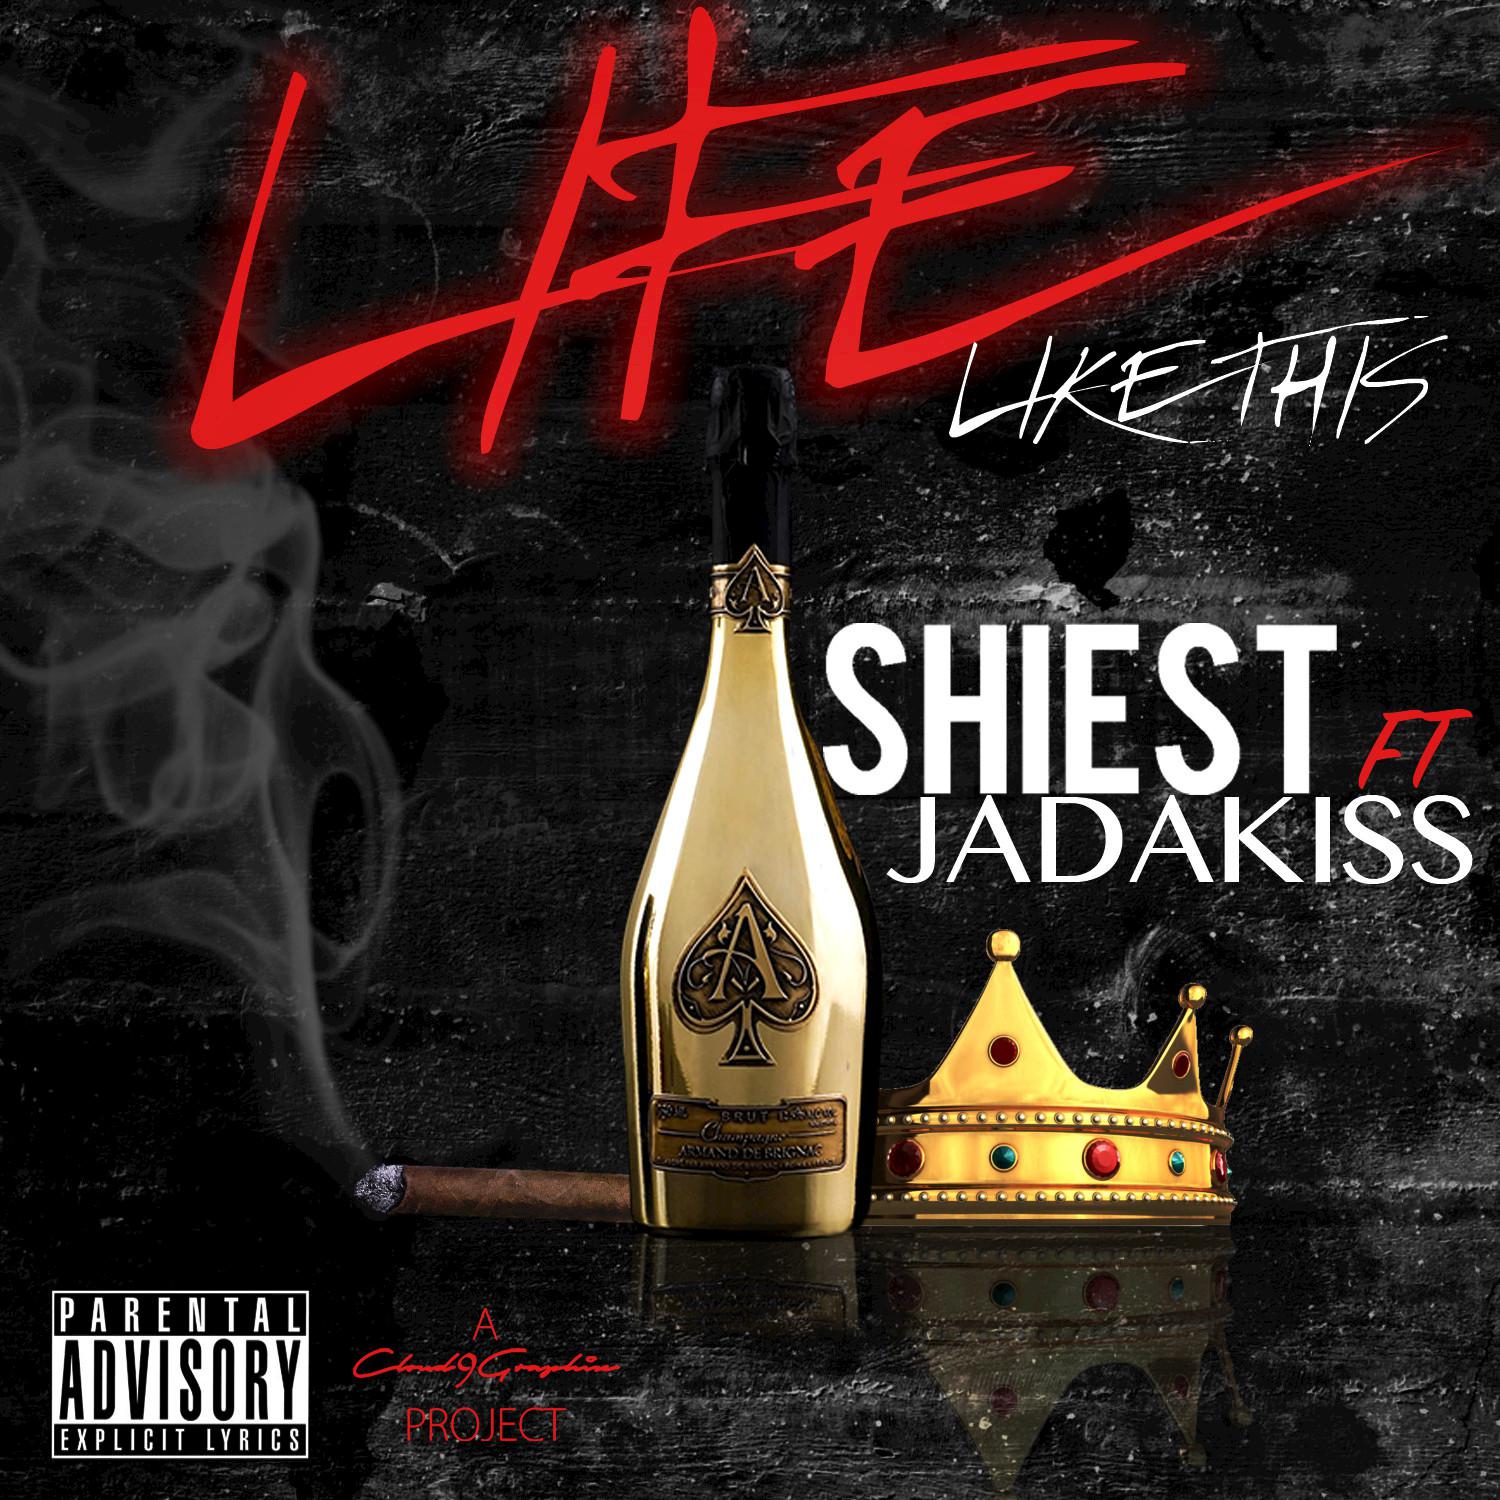 Life Like This (feat. Jadakiss) - Single